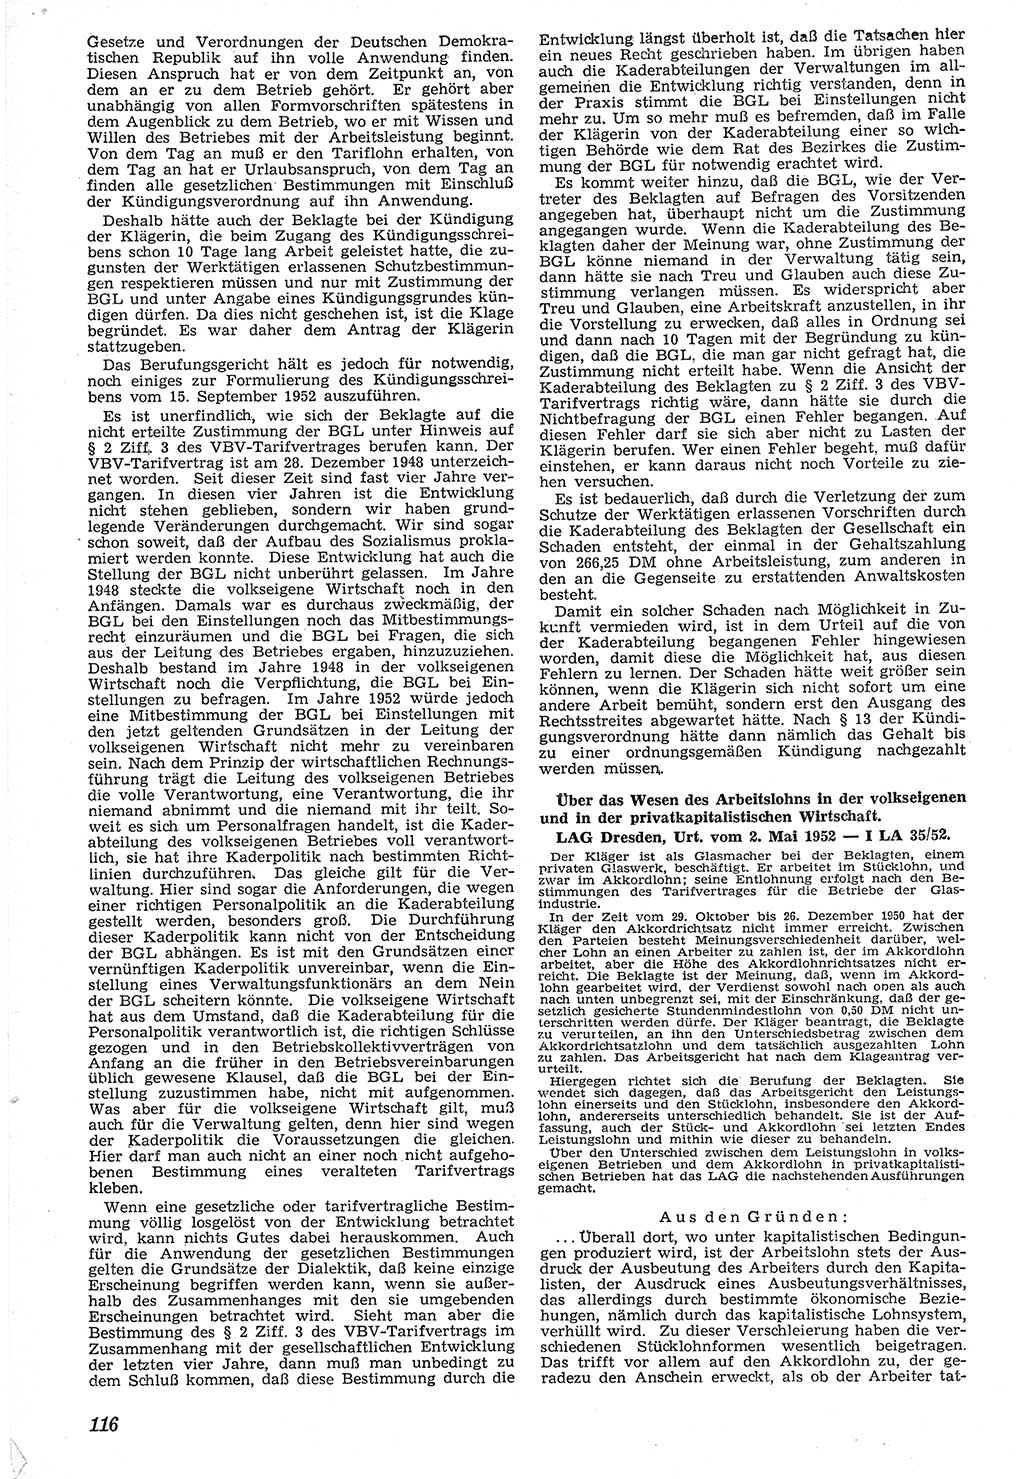 Neue Justiz (NJ), Zeitschrift für Recht und Rechtswissenschaft [Deutsche Demokratische Republik (DDR)], 7. Jahrgang 1953, Seite 116 (NJ DDR 1953, S. 116)